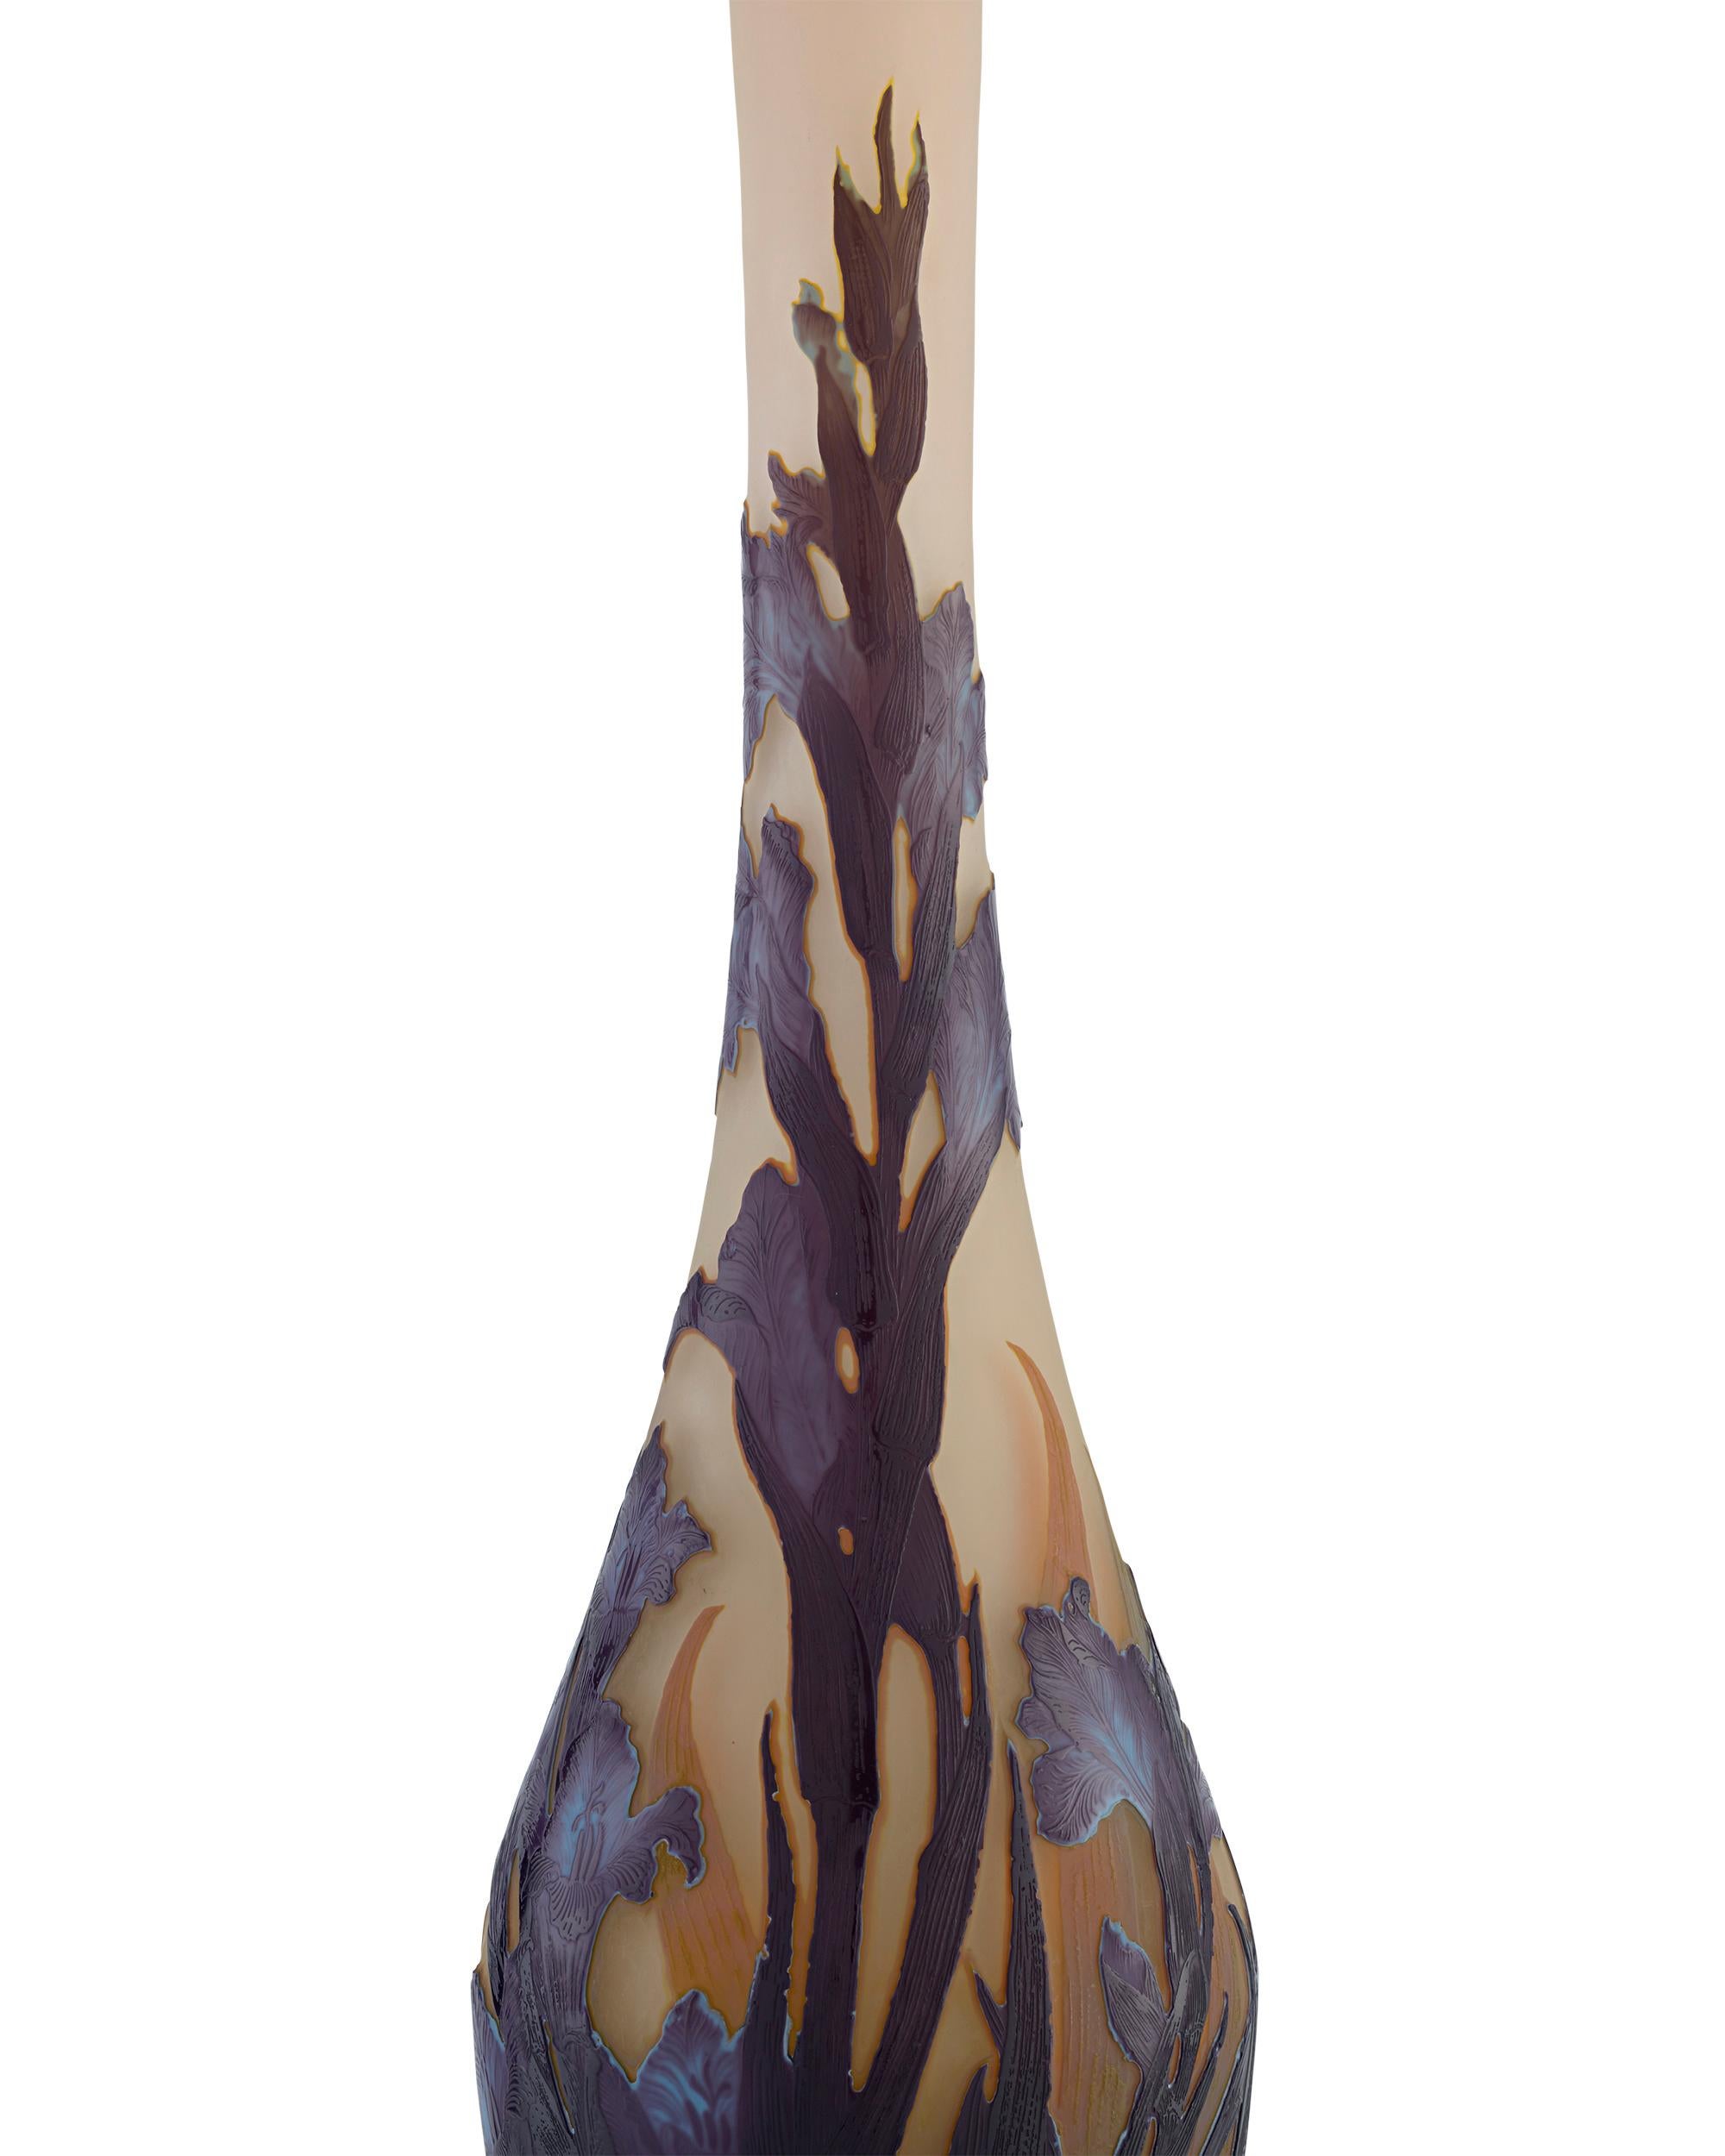 Exceptionnel par sa taille et sa qualité artistique, ce vase en verre d'art camée est l'œuvre du célèbre maître de l'Art nouveau Émile Gallé, l'un des noms les plus réputés de la verrerie française. L'amour de l'artiste pour la Nature est évident